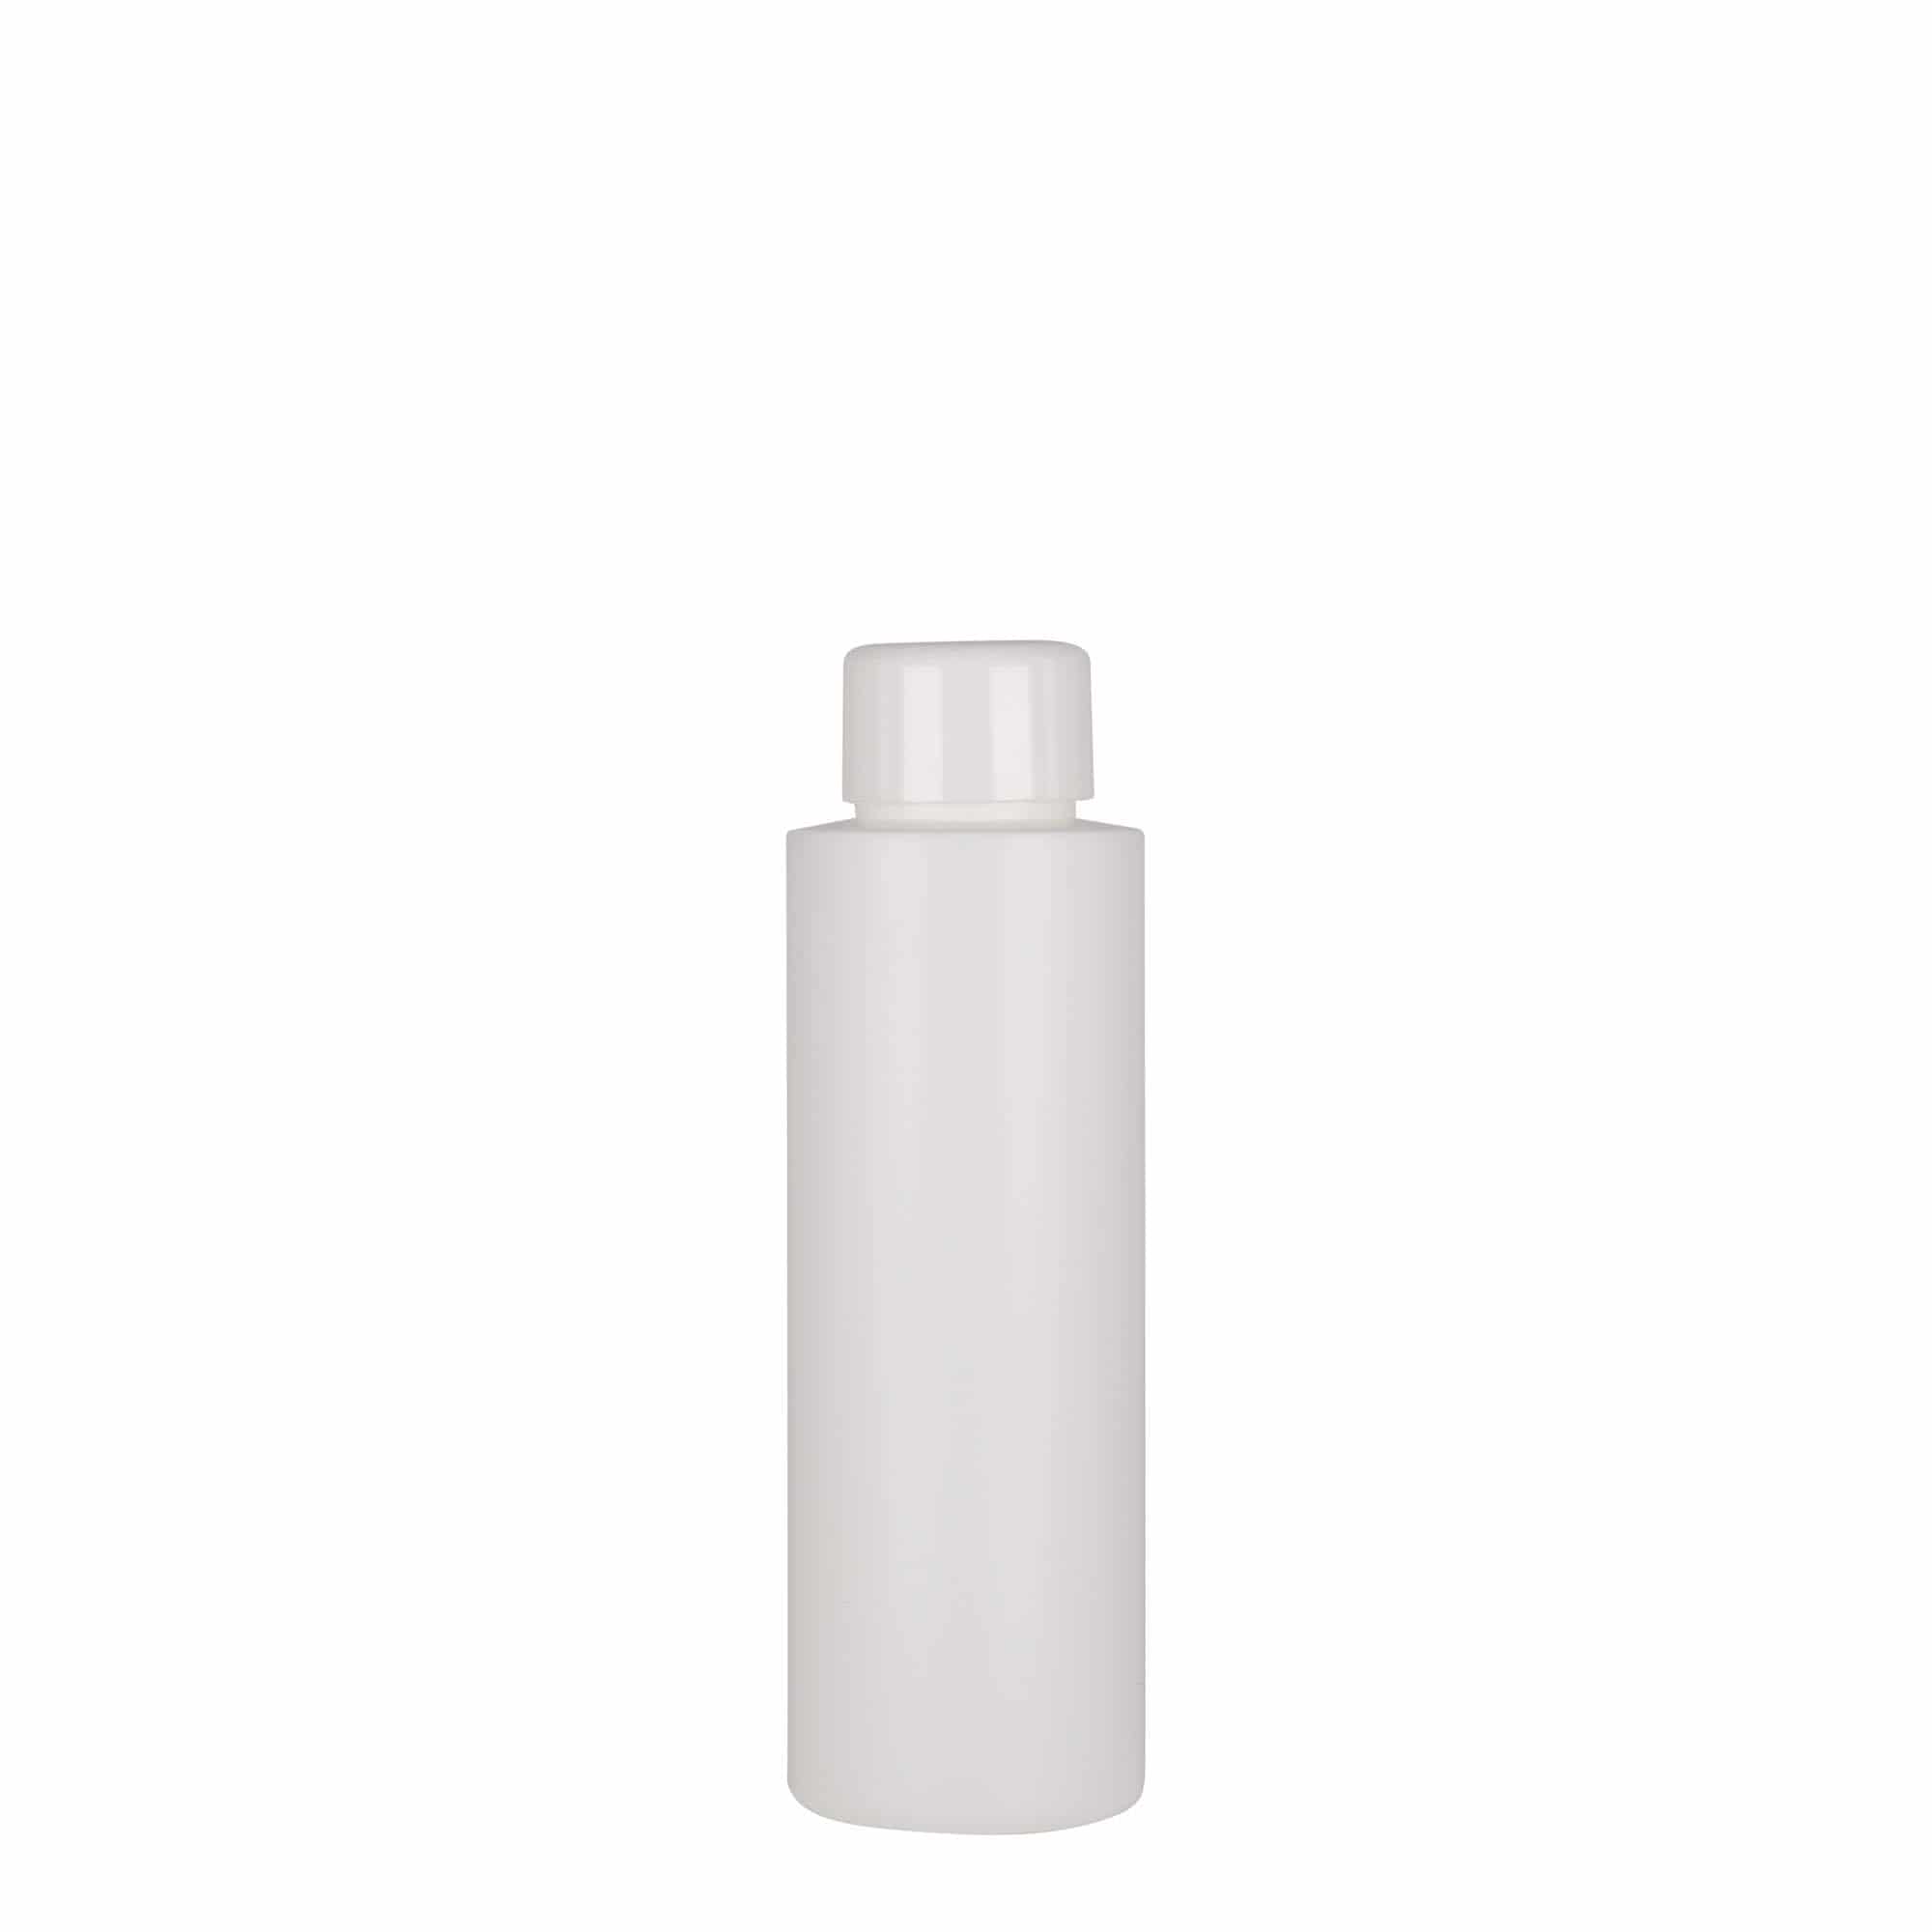 100 ml-es műanyag palack 'Pipe', HDPE, fehér, szájnyílás: GPI 24/410